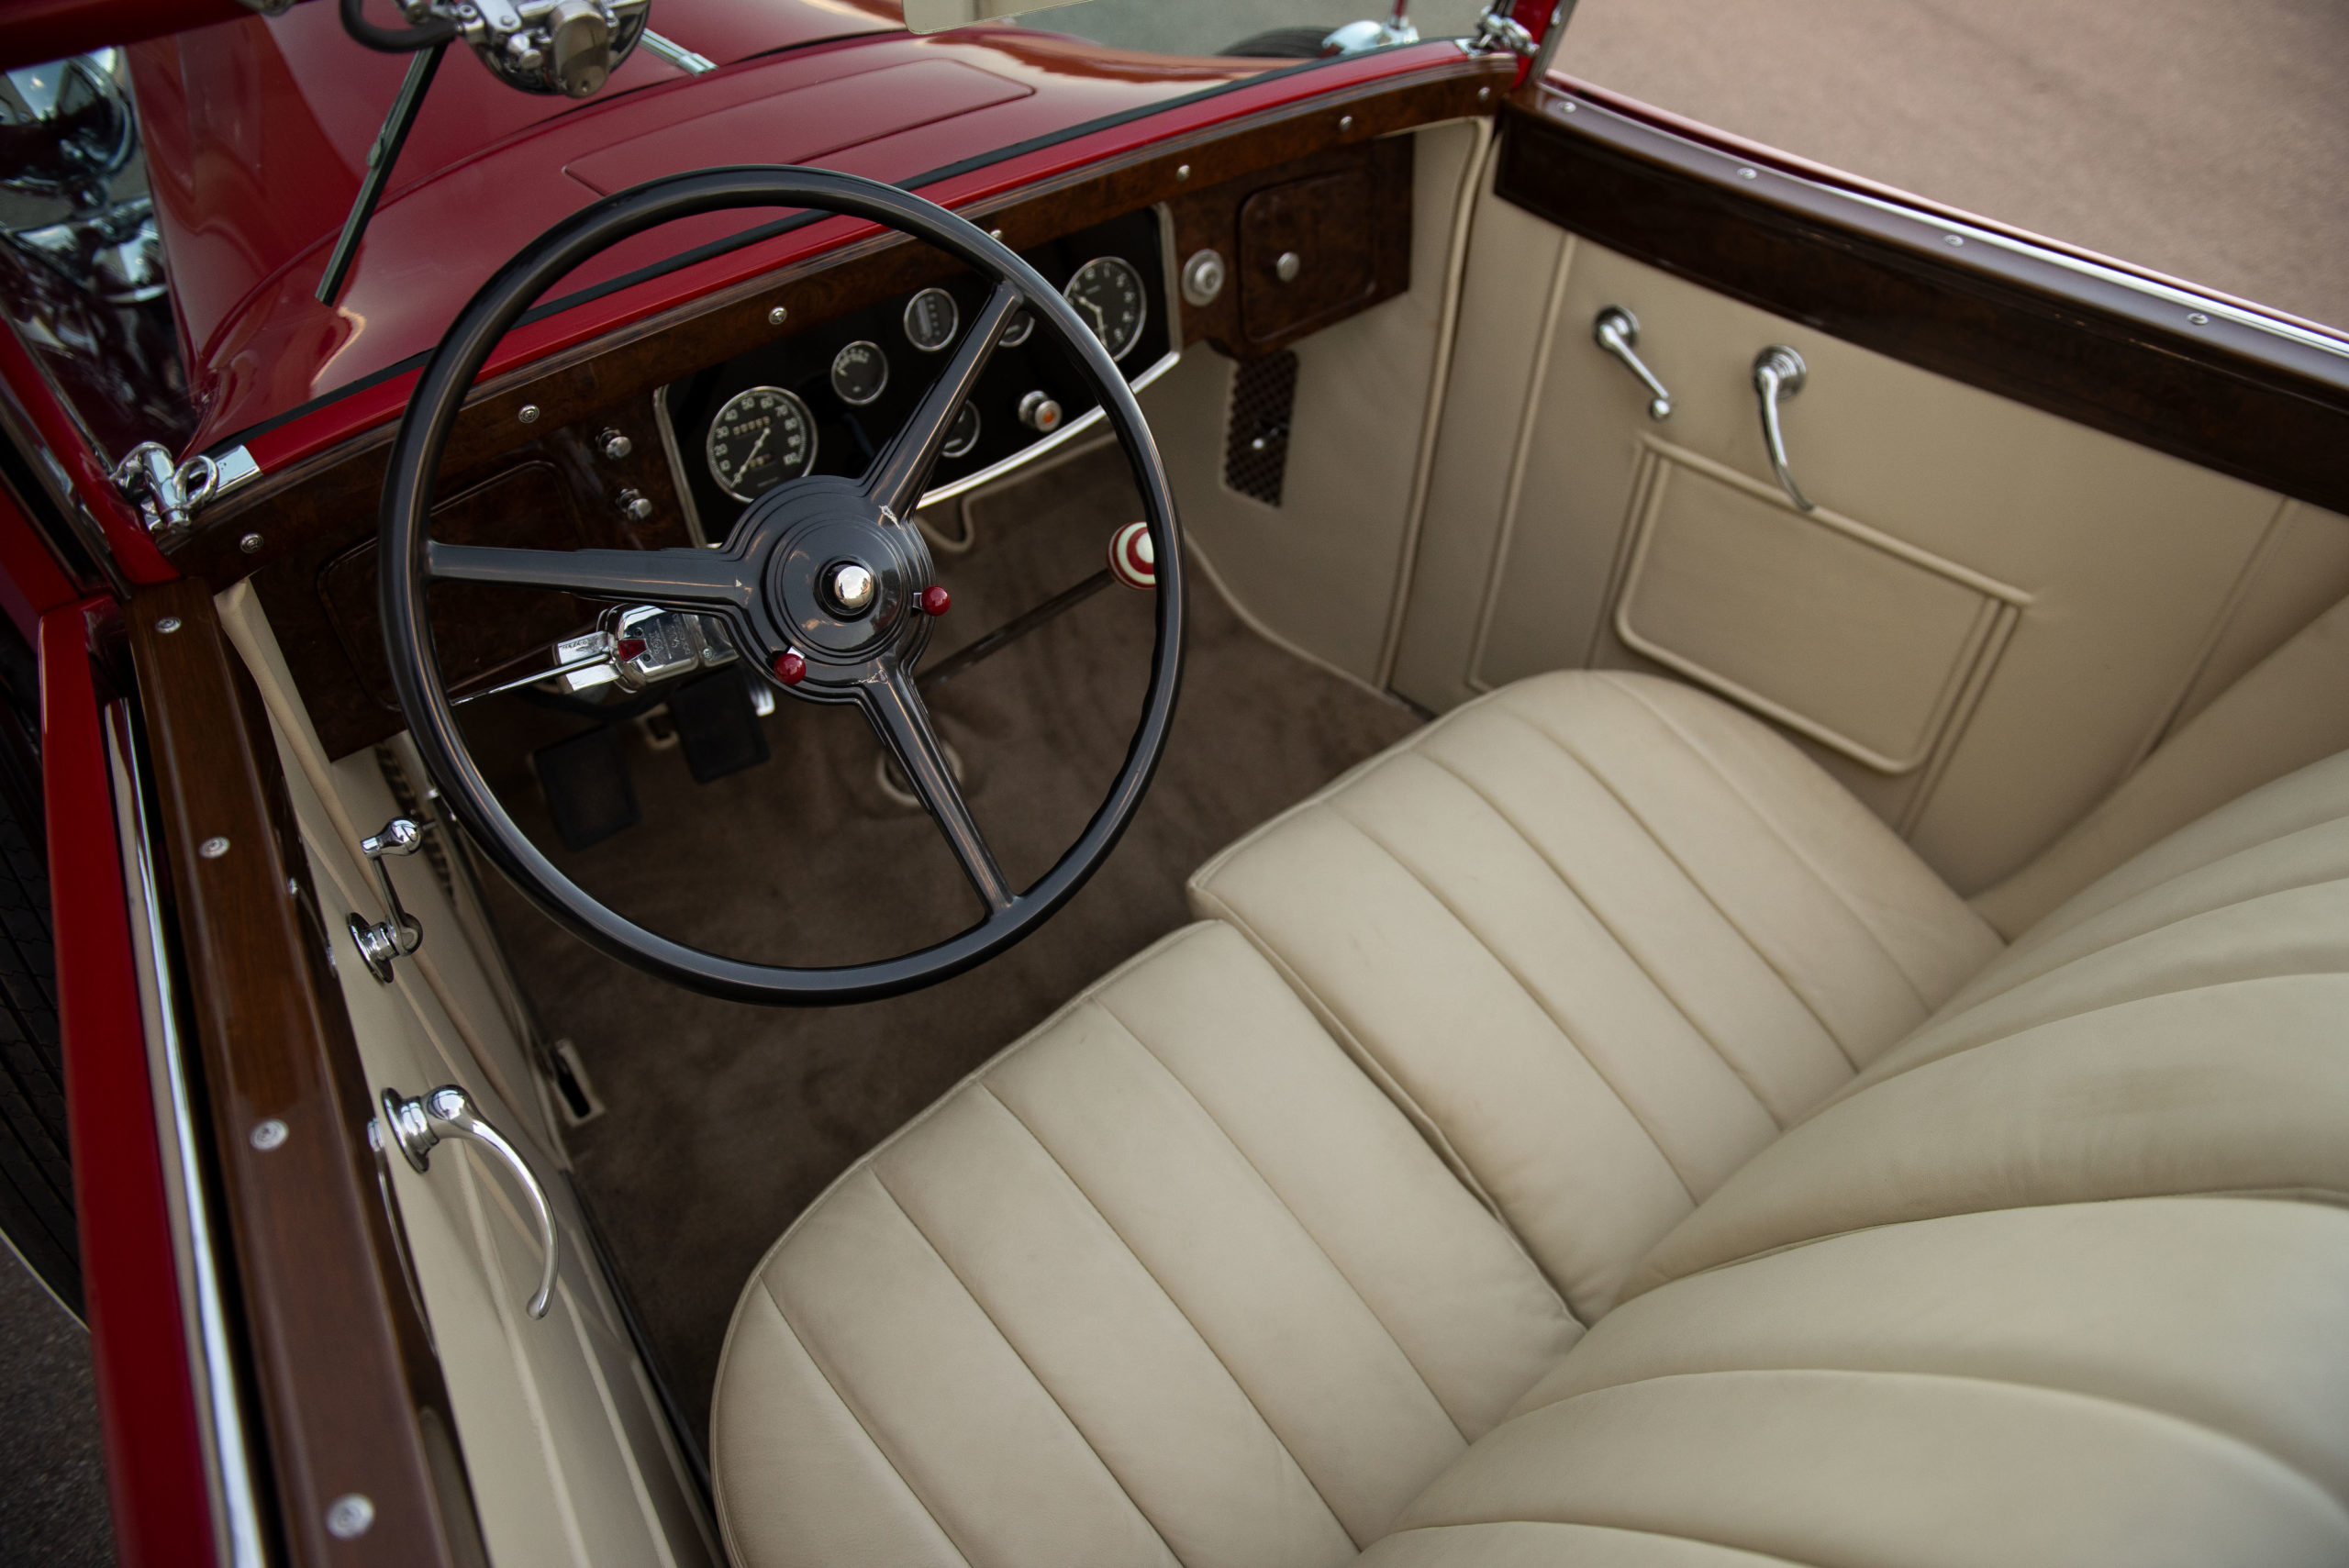 1932 Packard Eight Coupe Roadster, Packard, Packard Eight